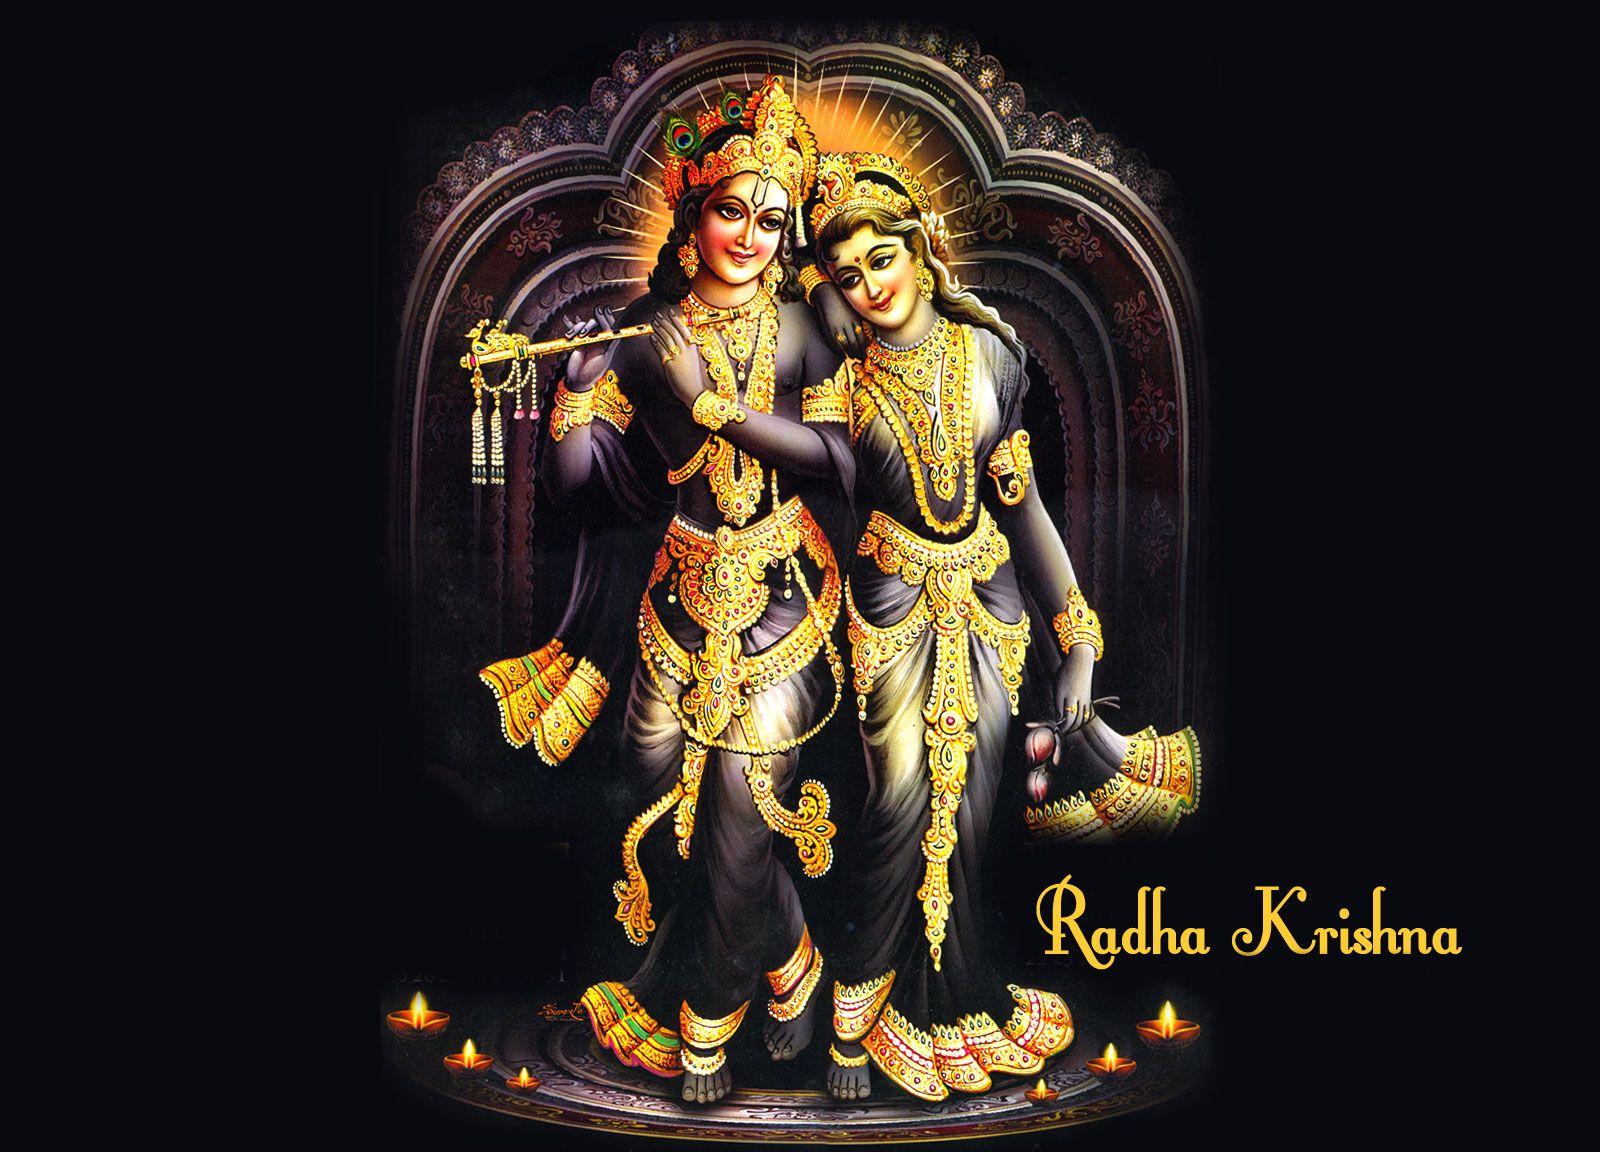 Download Free HD Wallpaper & Image of Bhagwan Shri Krishna. Shree